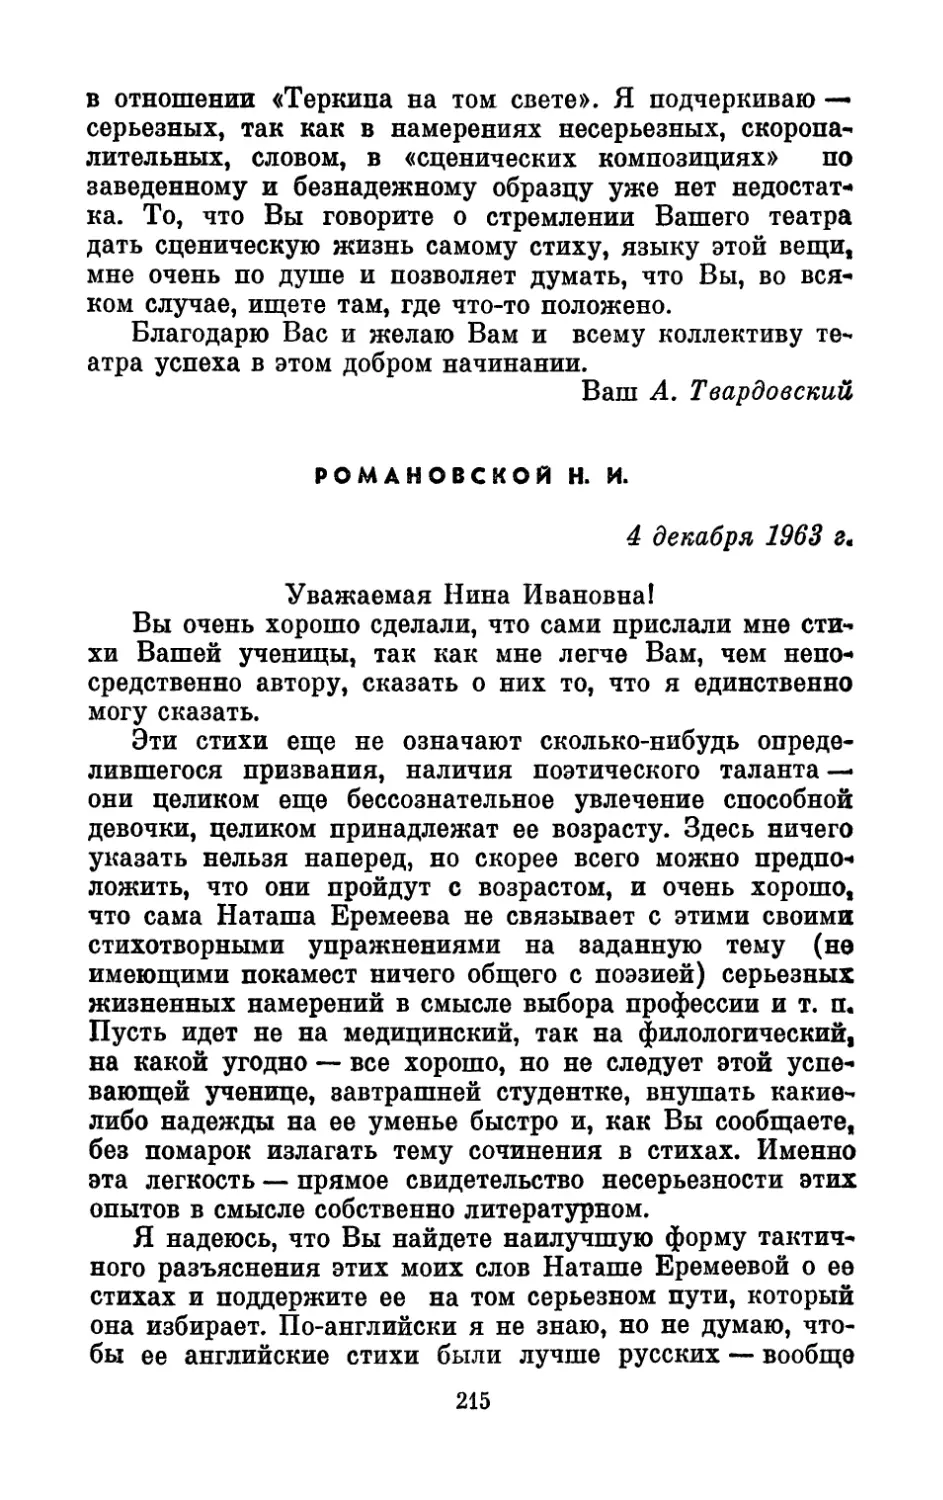 Романовской Н. И., 4 декабря 1963 г.